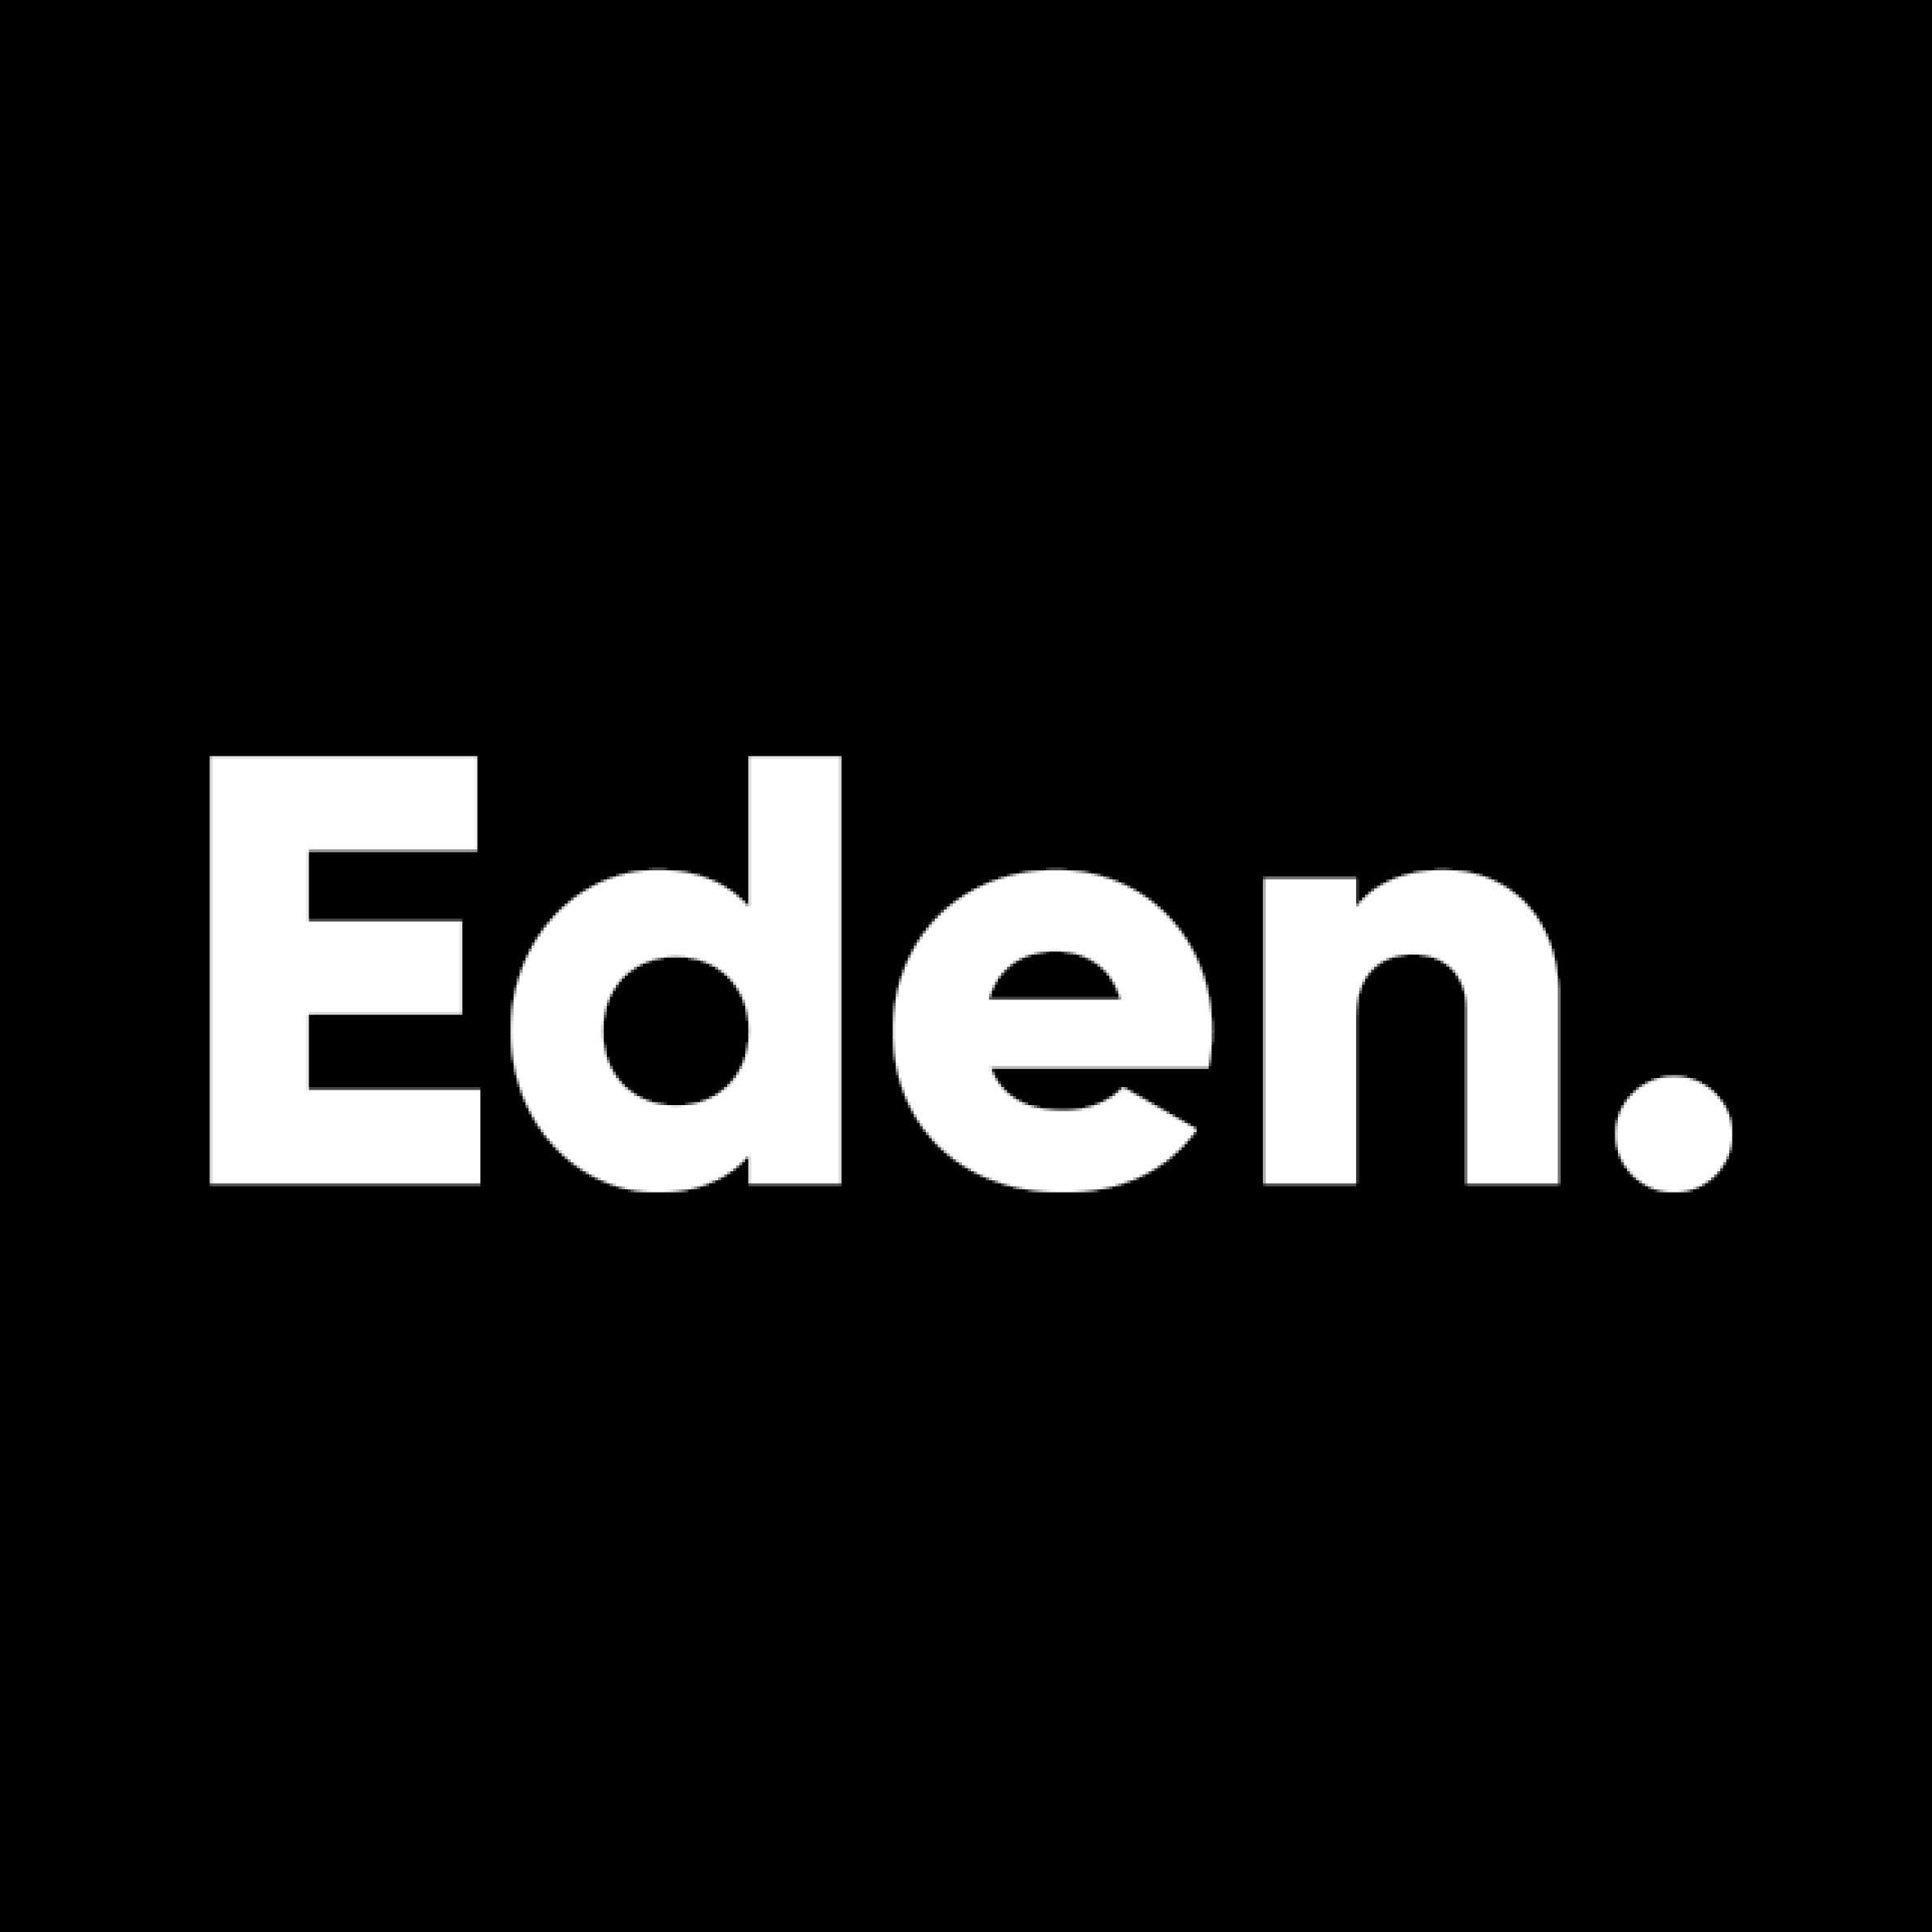 Eden TV